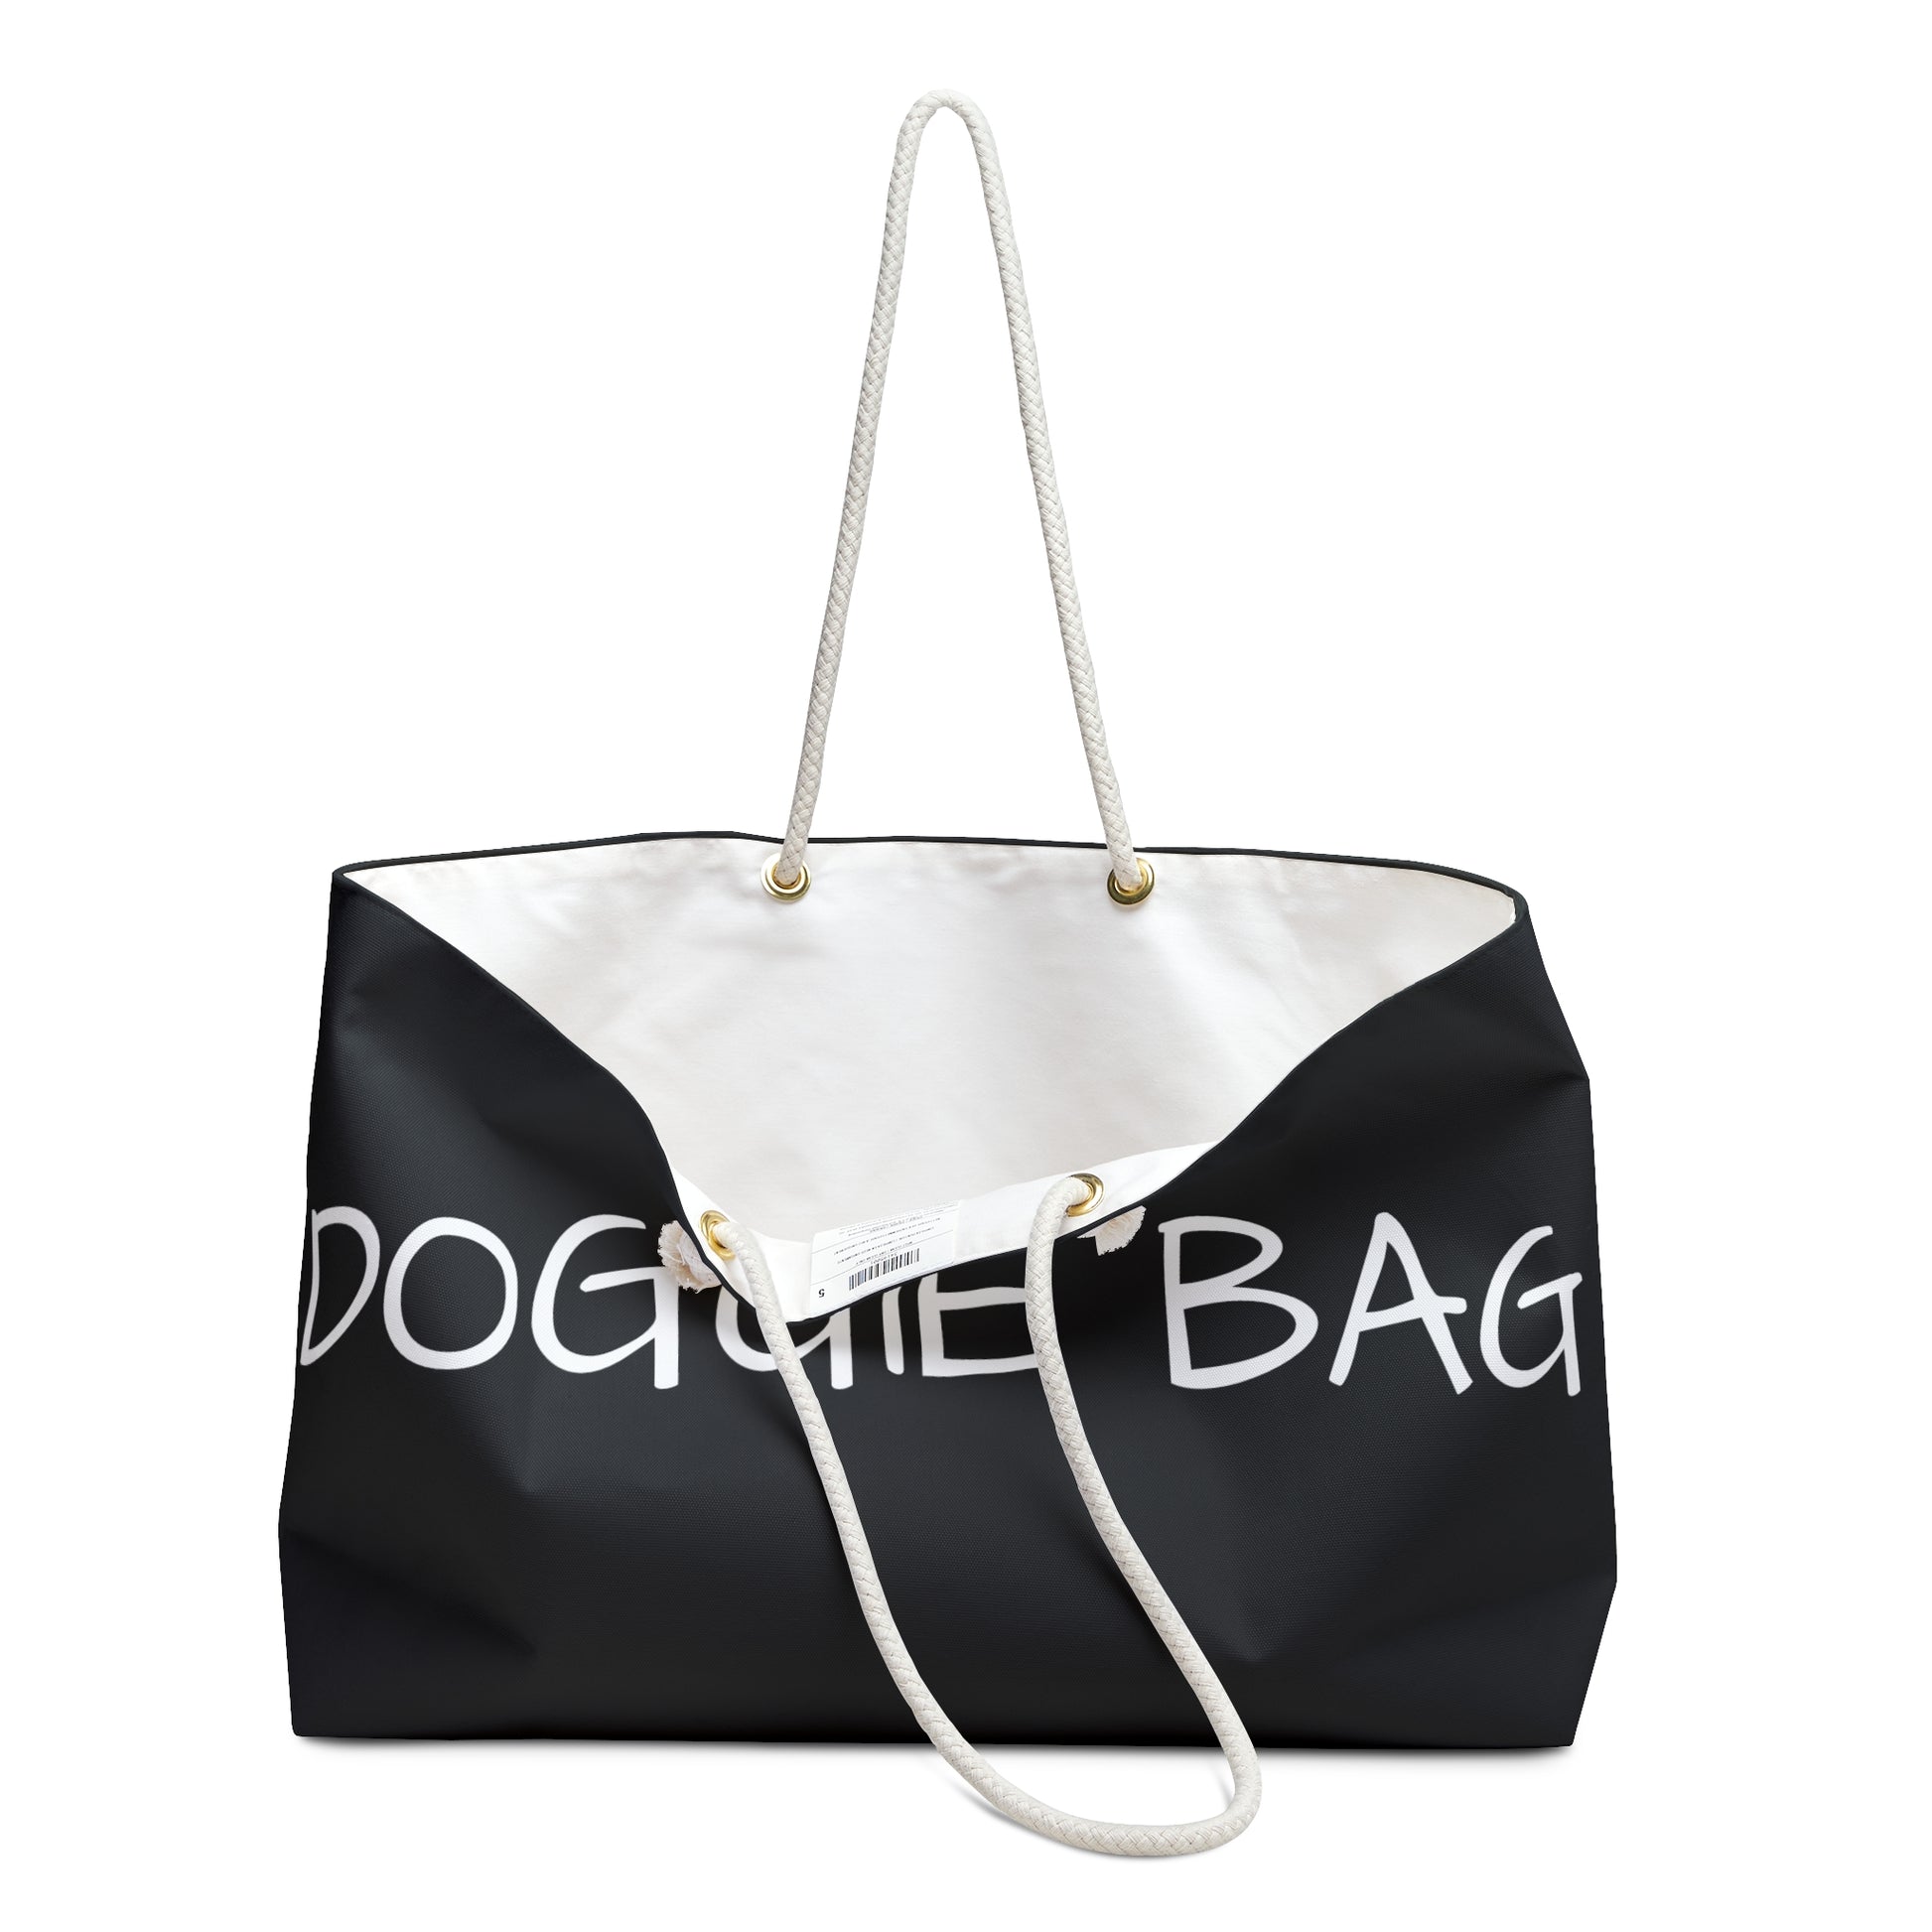 Weekender Tote Bag - Doggie Bag handles